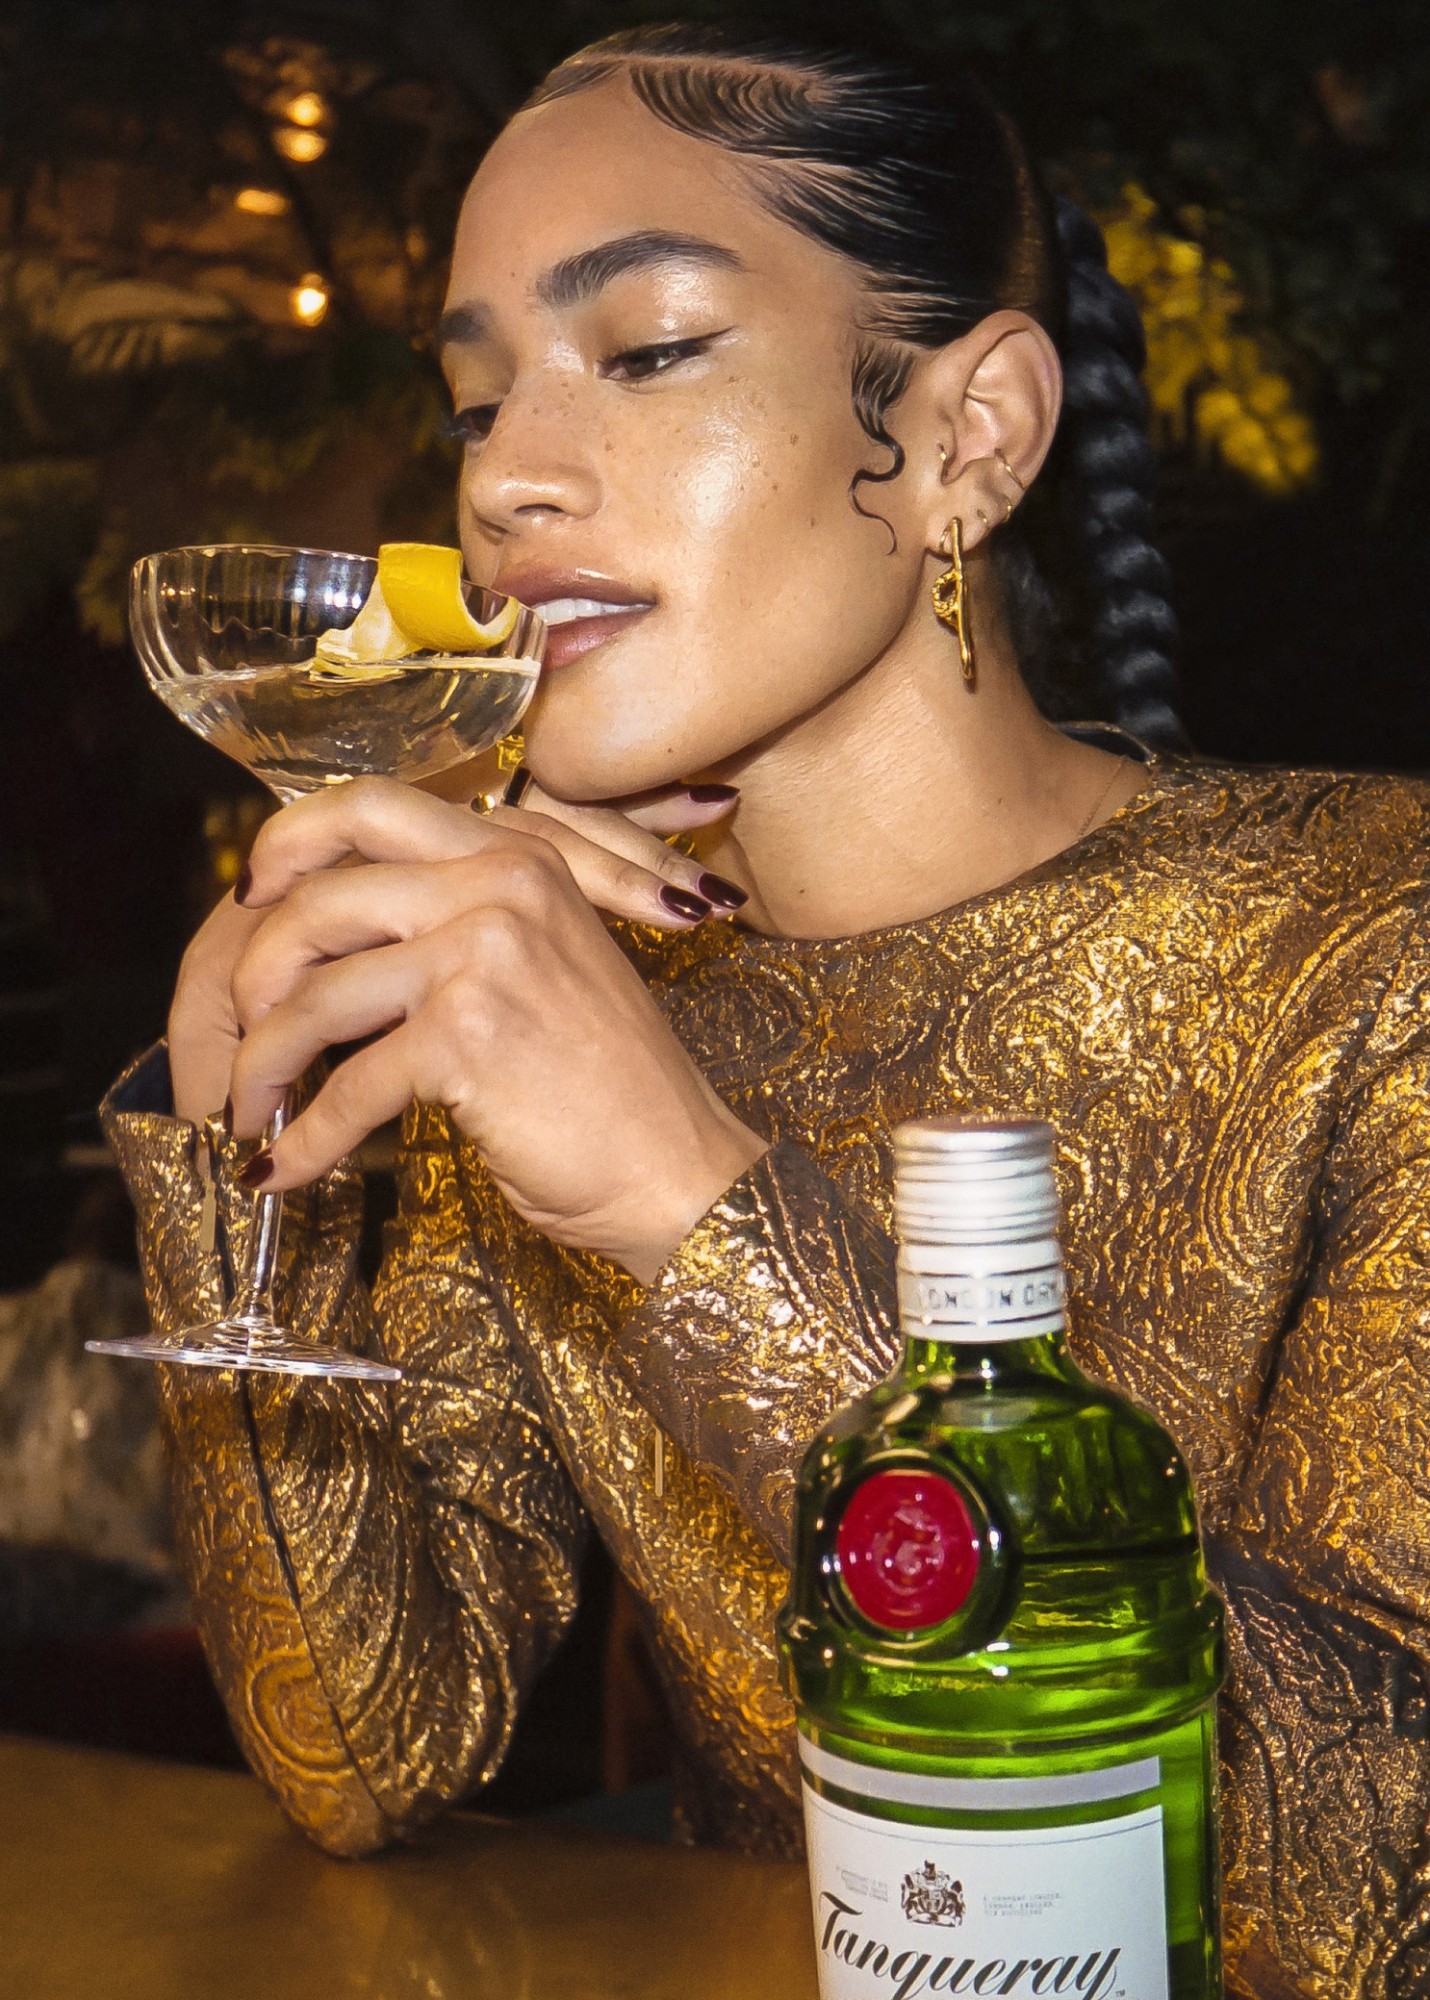 Το Tanqueray Martini with a Twist πρωταγωνιστεί στην νέα ταινία House of Gucci